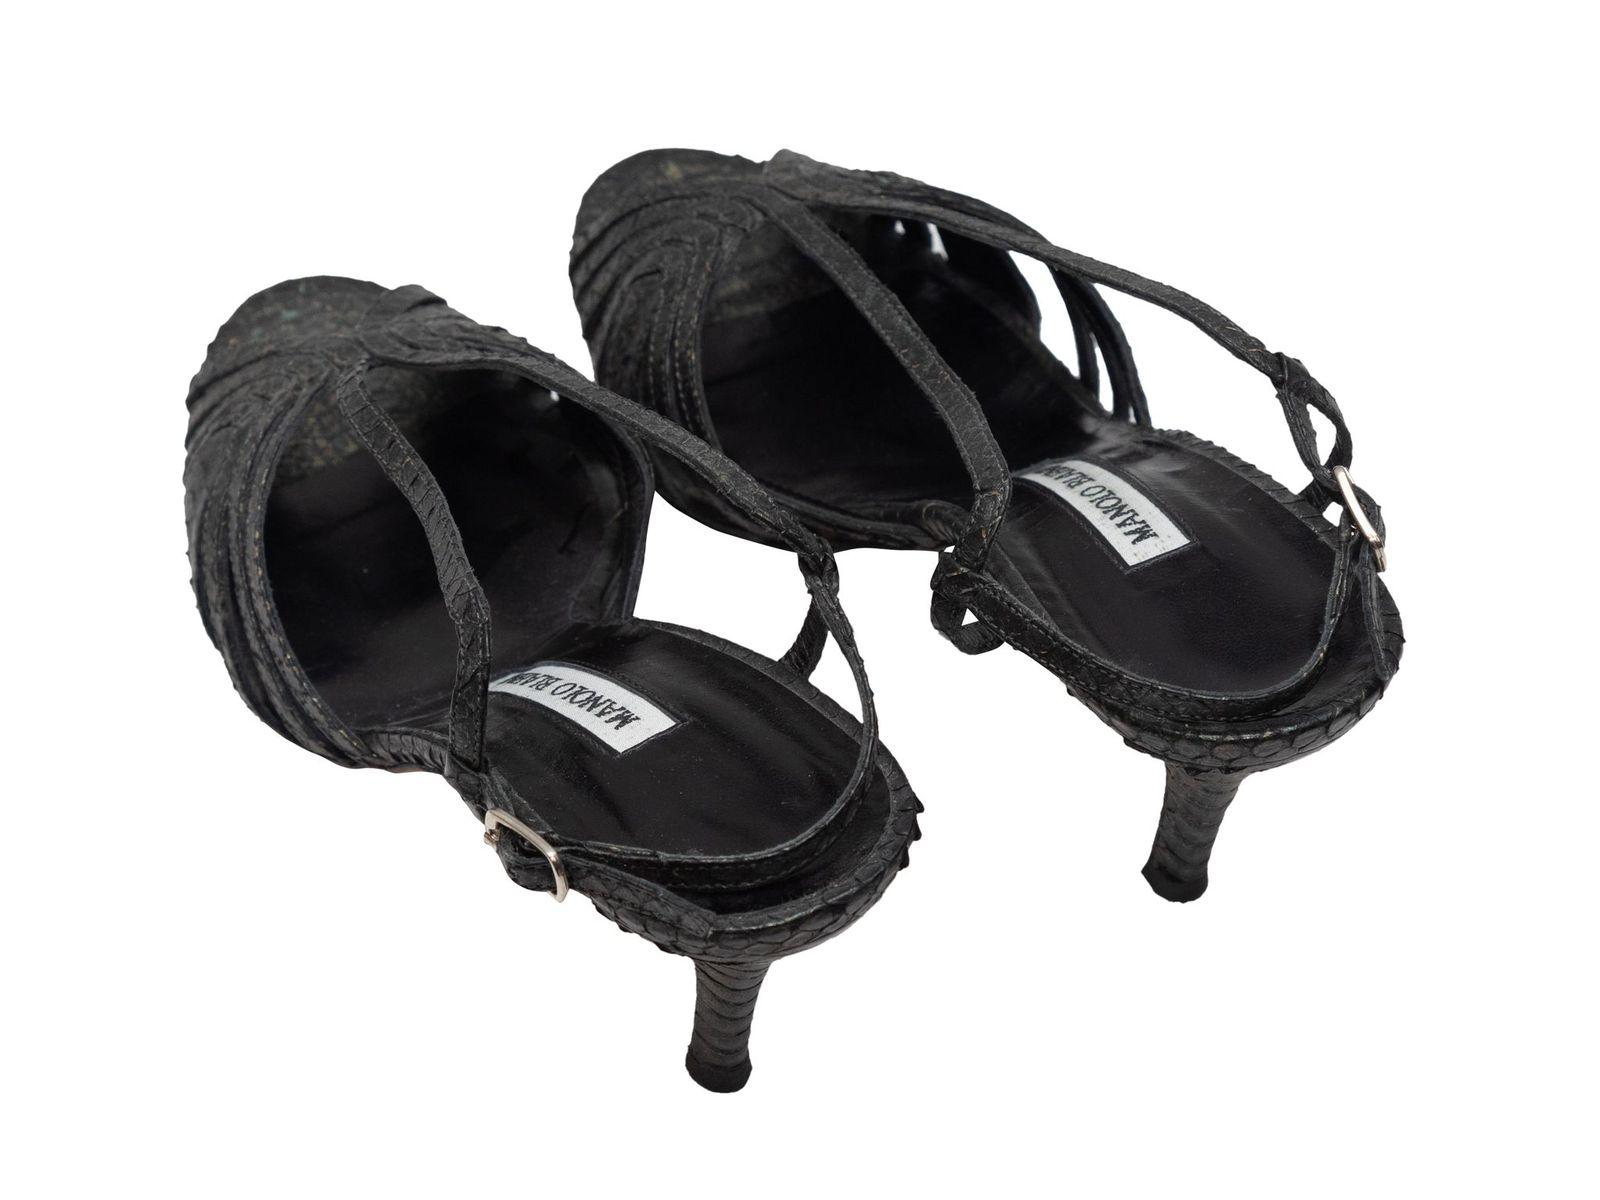 Women's Manolo Blahnik Black Snakeskin Slingback Sandals